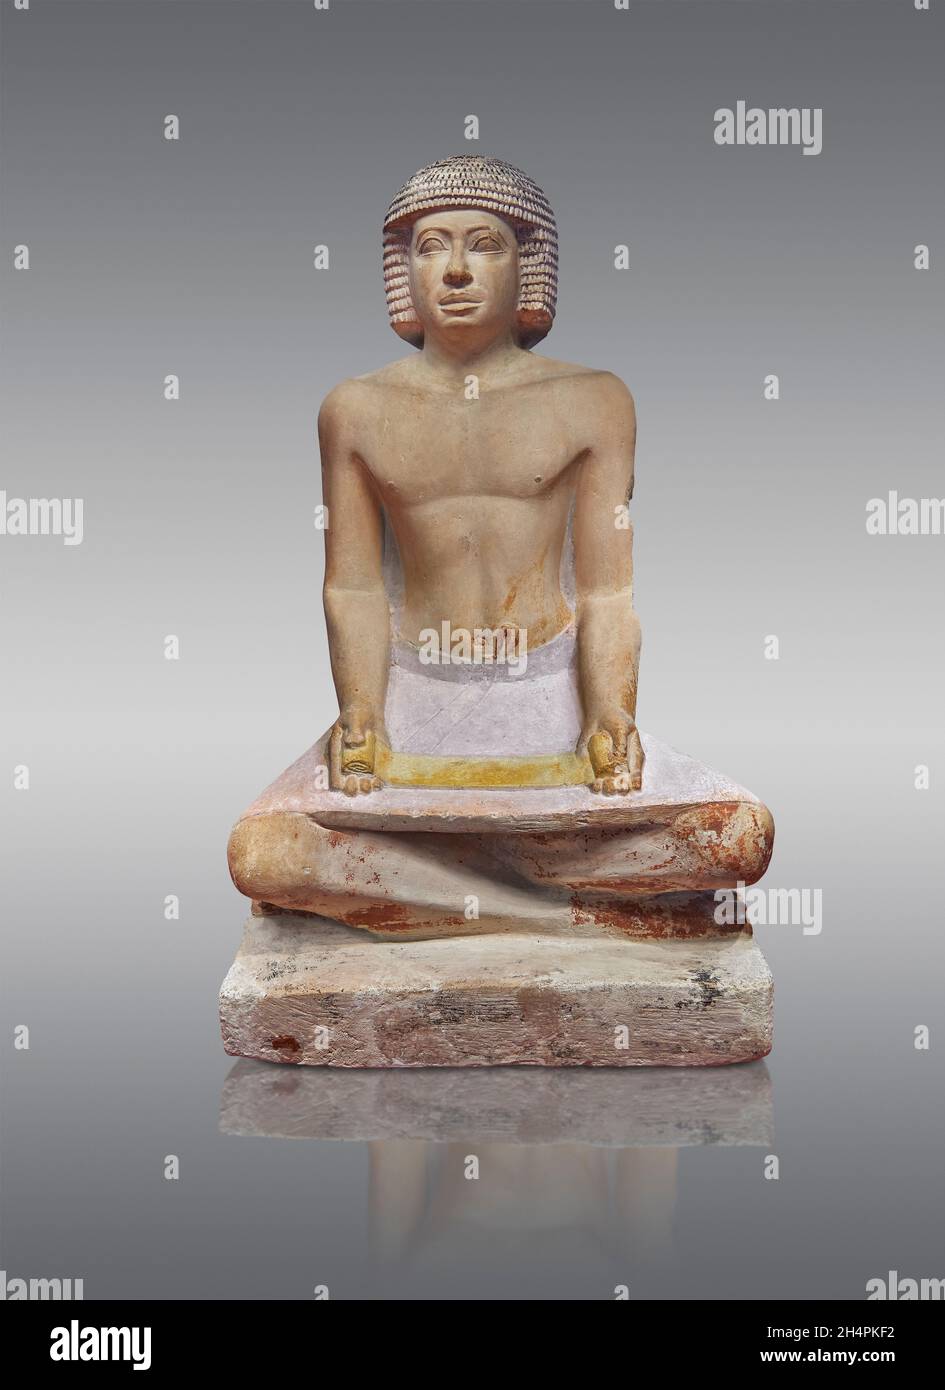 Statua egiziana scultura di uno scriba seduto a zampe incrociate con un papiro in grembo, 2500-2530 a.C., quinta dinastia, calcare. Museo del Louvre Foto Stock